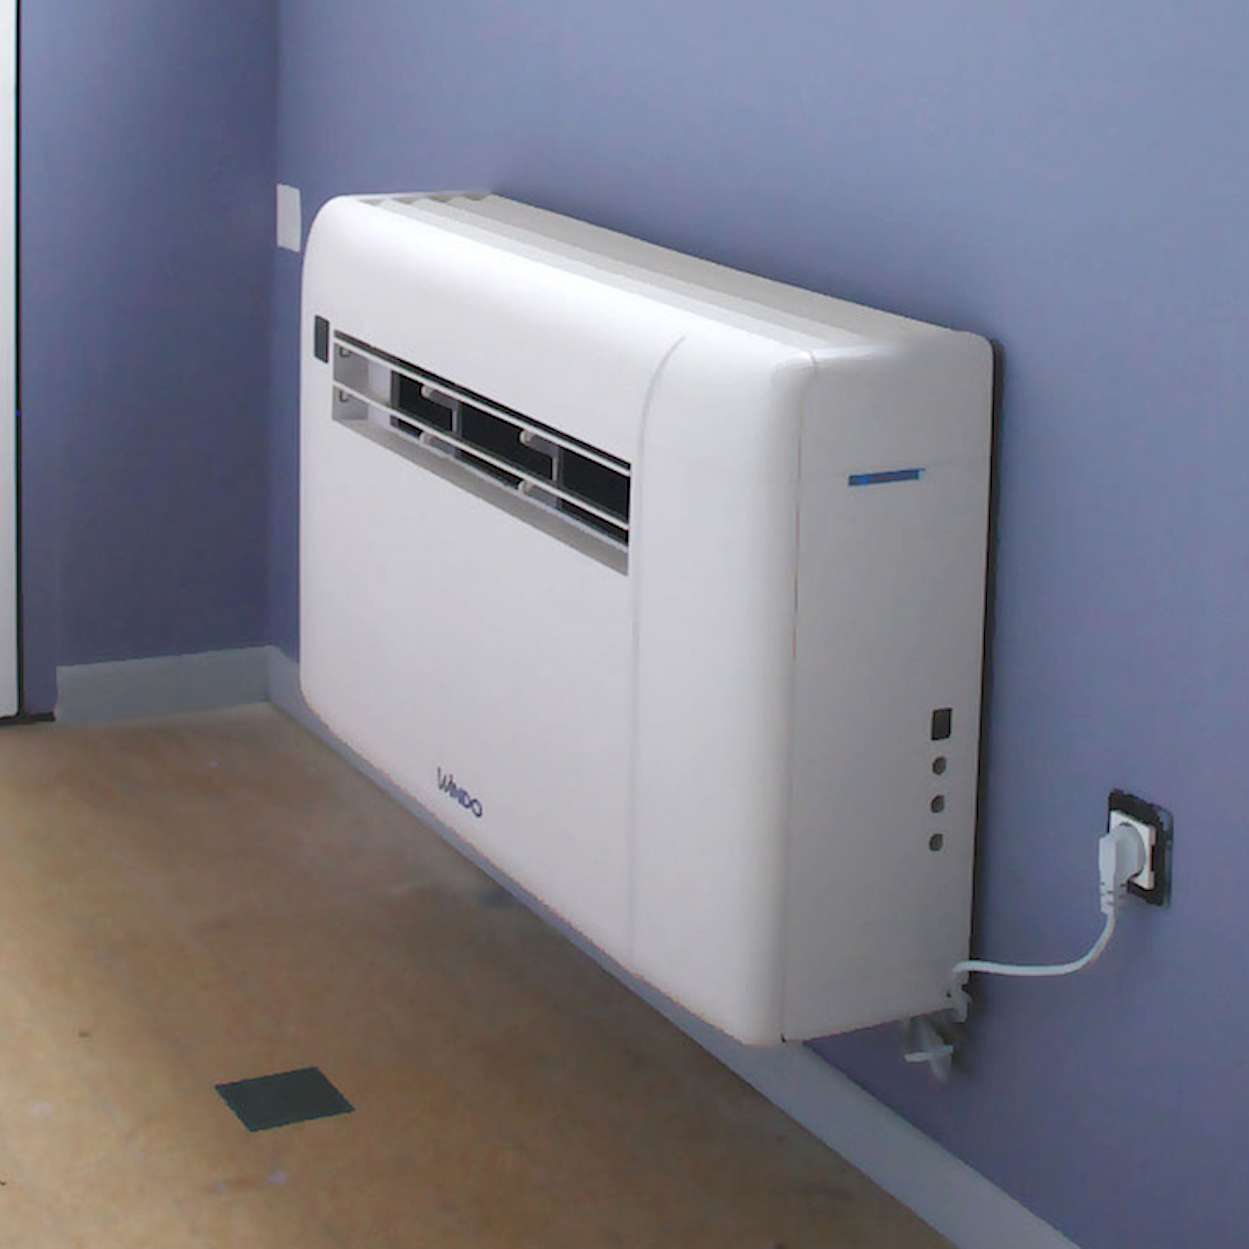 Comment installer une climatisation réversible ?